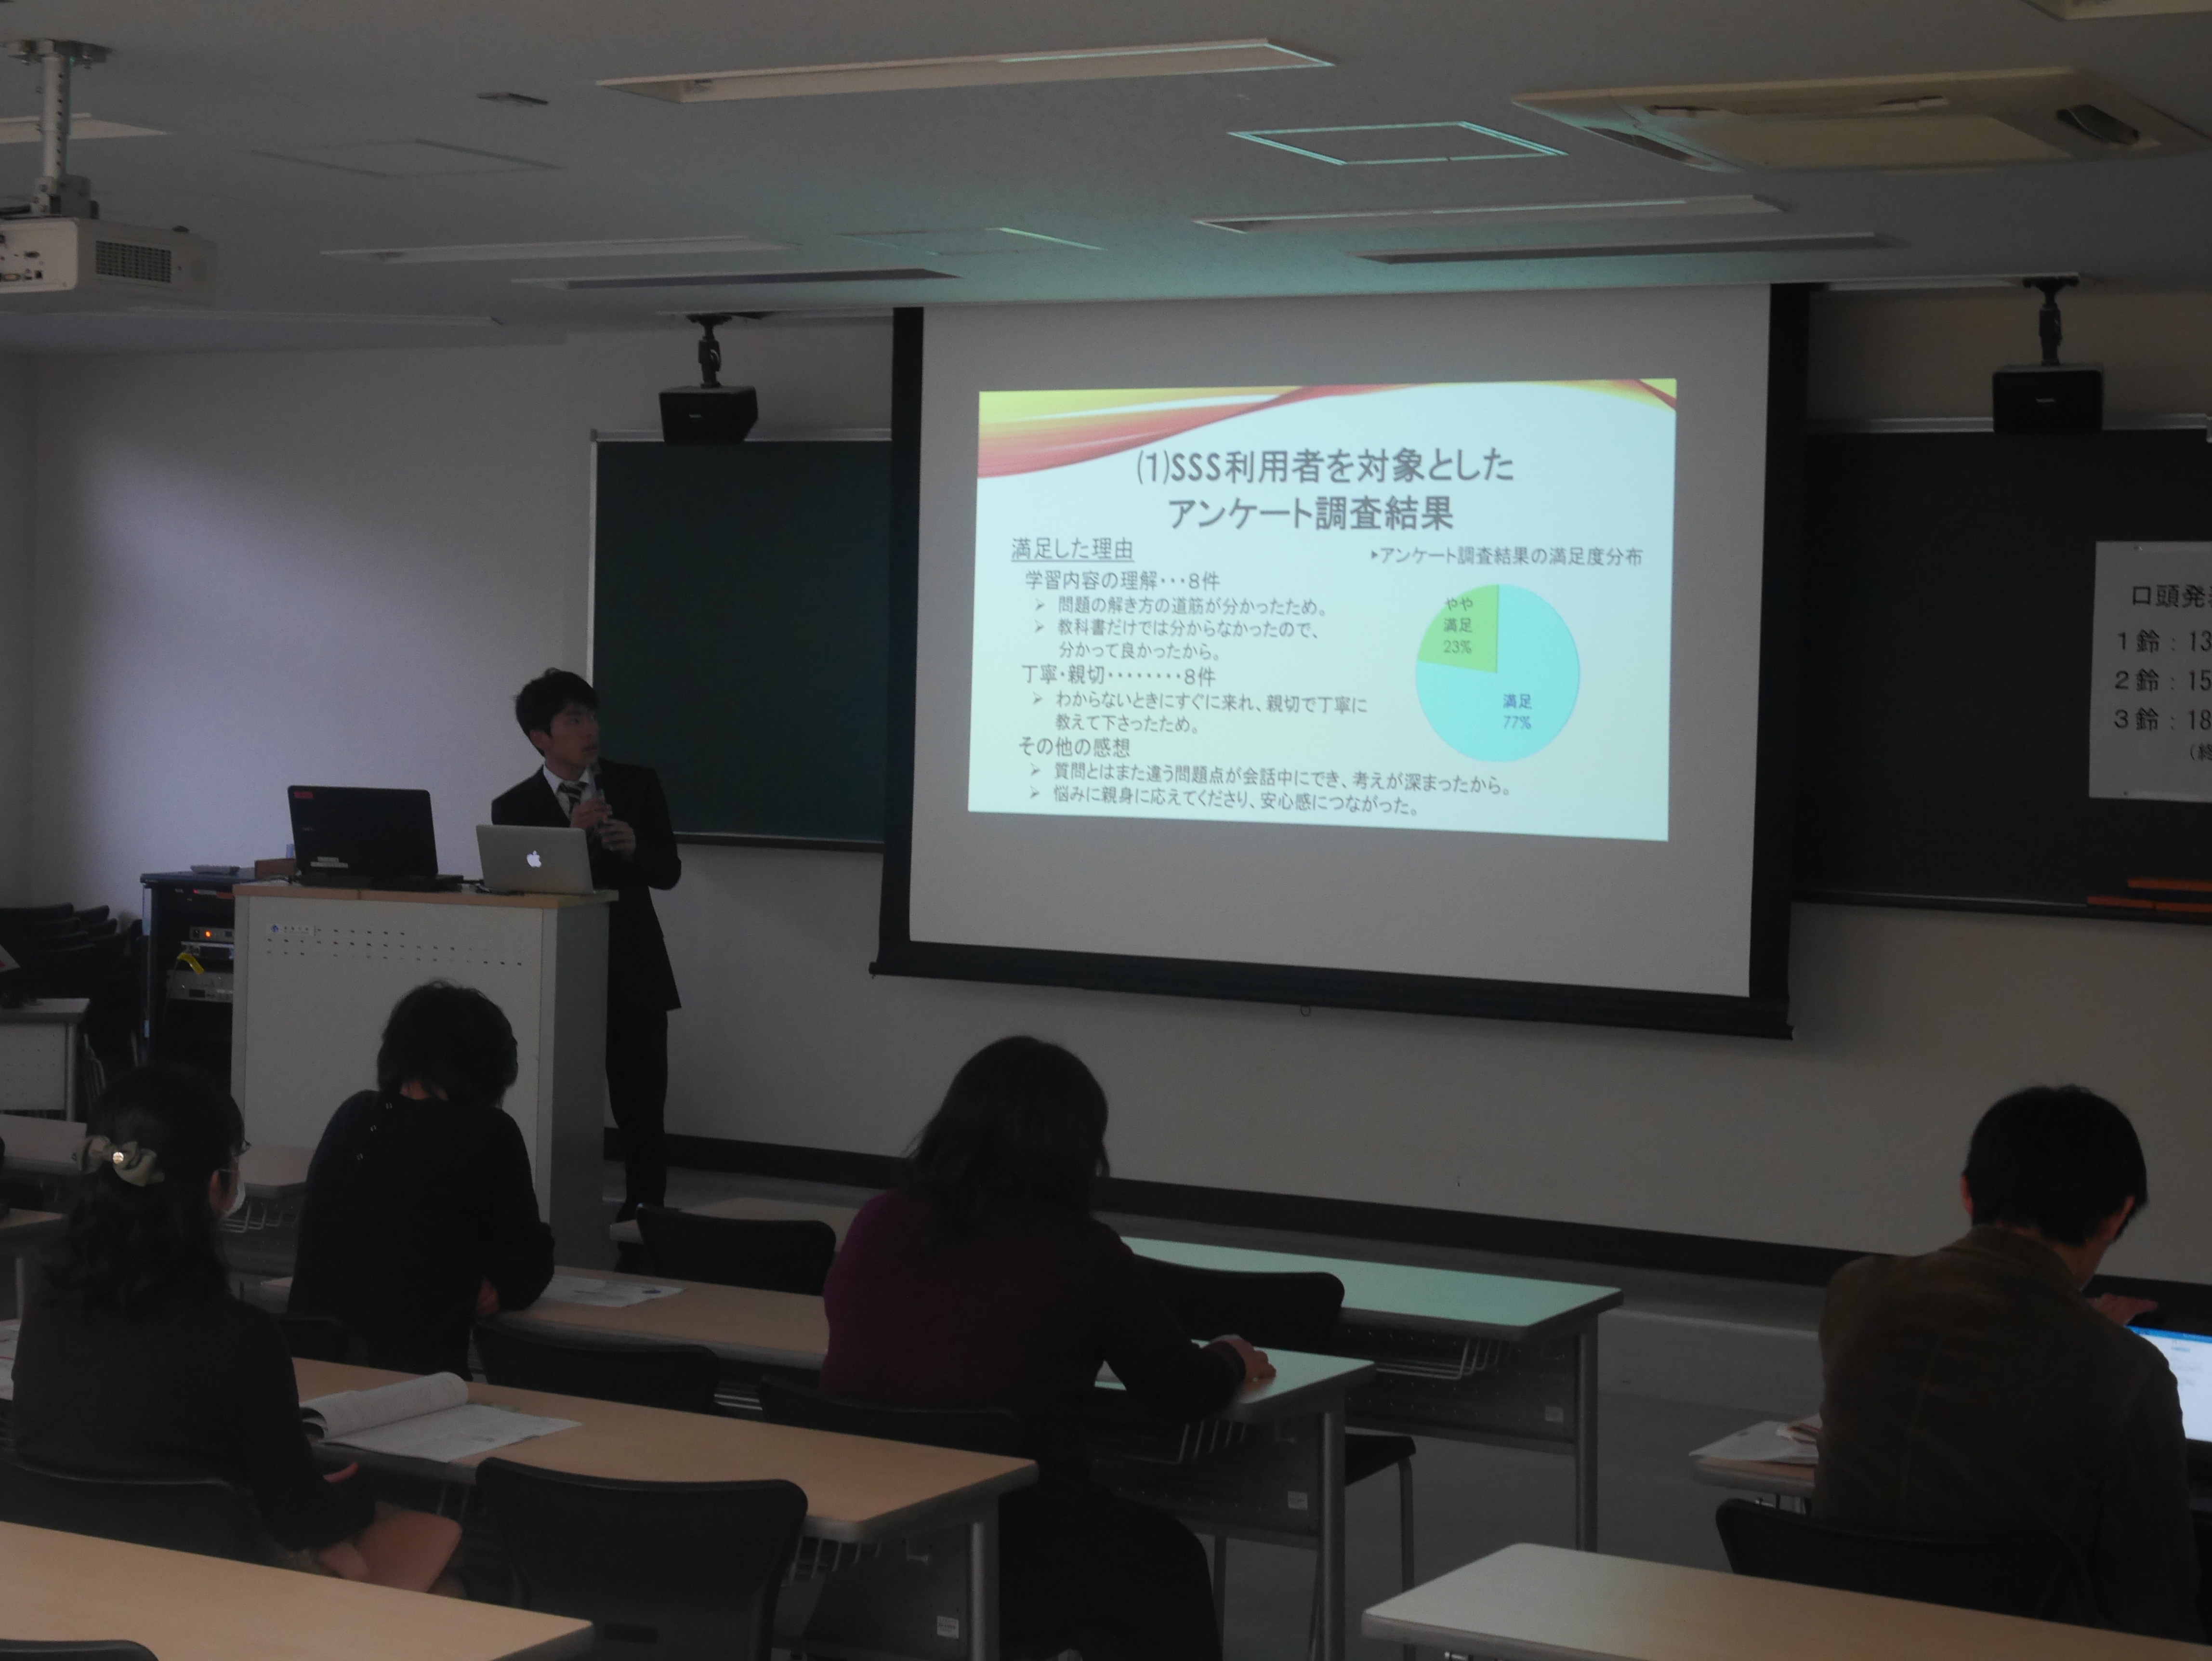 平成28年度 第12回 大学教育カンファレンス In 徳島 を開催しました 平成28年12月27日 徳島大学高等教育研究センター